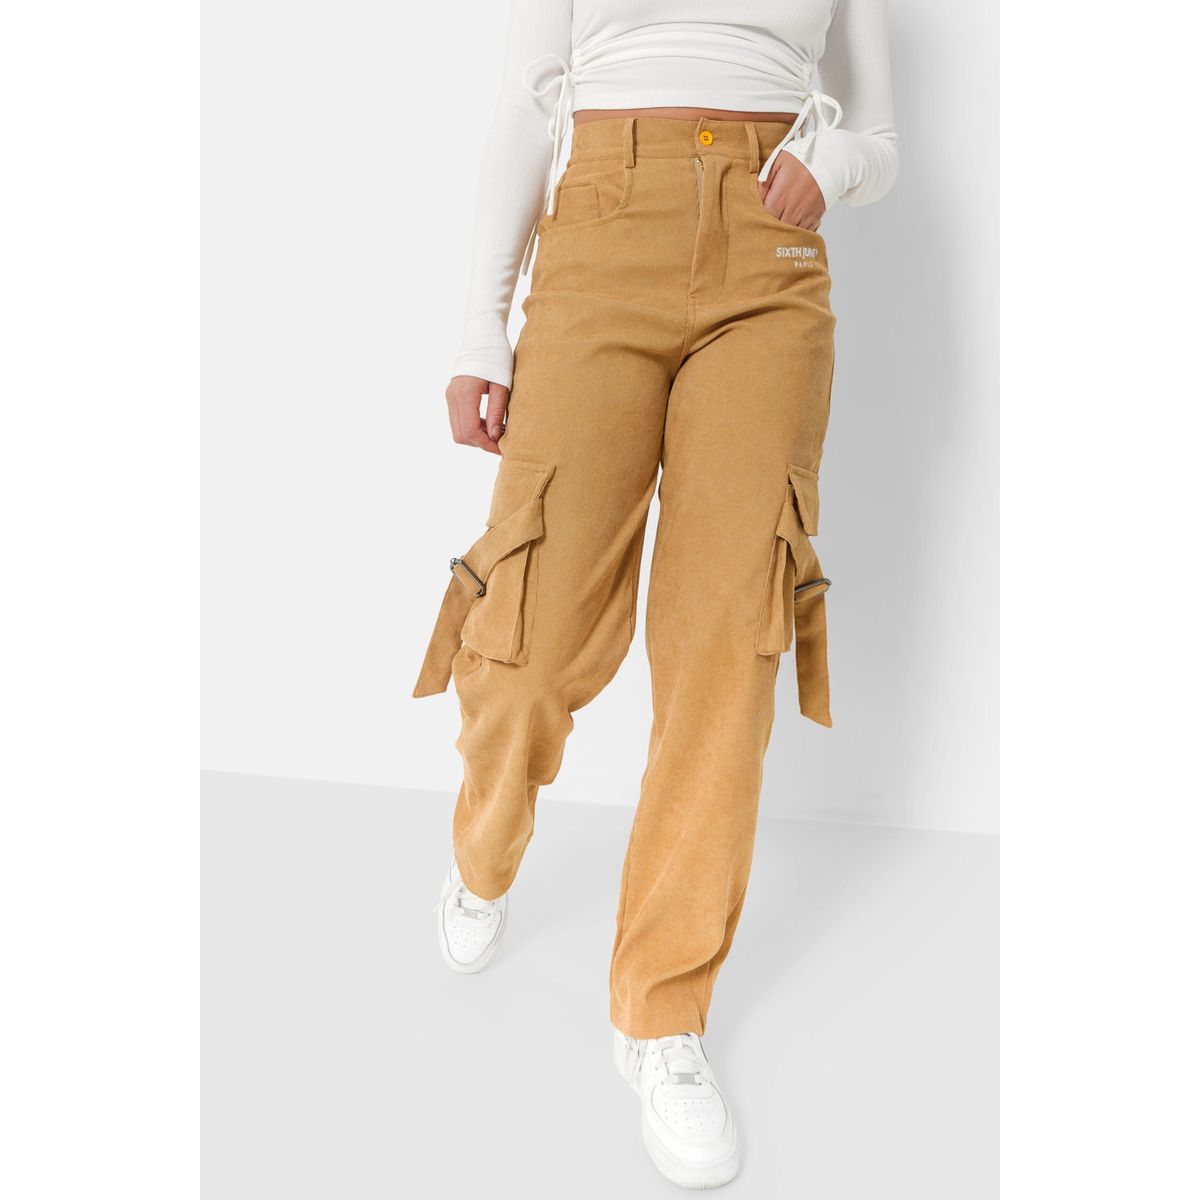 Pantalon cargo Jean liso – Sos Vos Jeans – Tienda Online